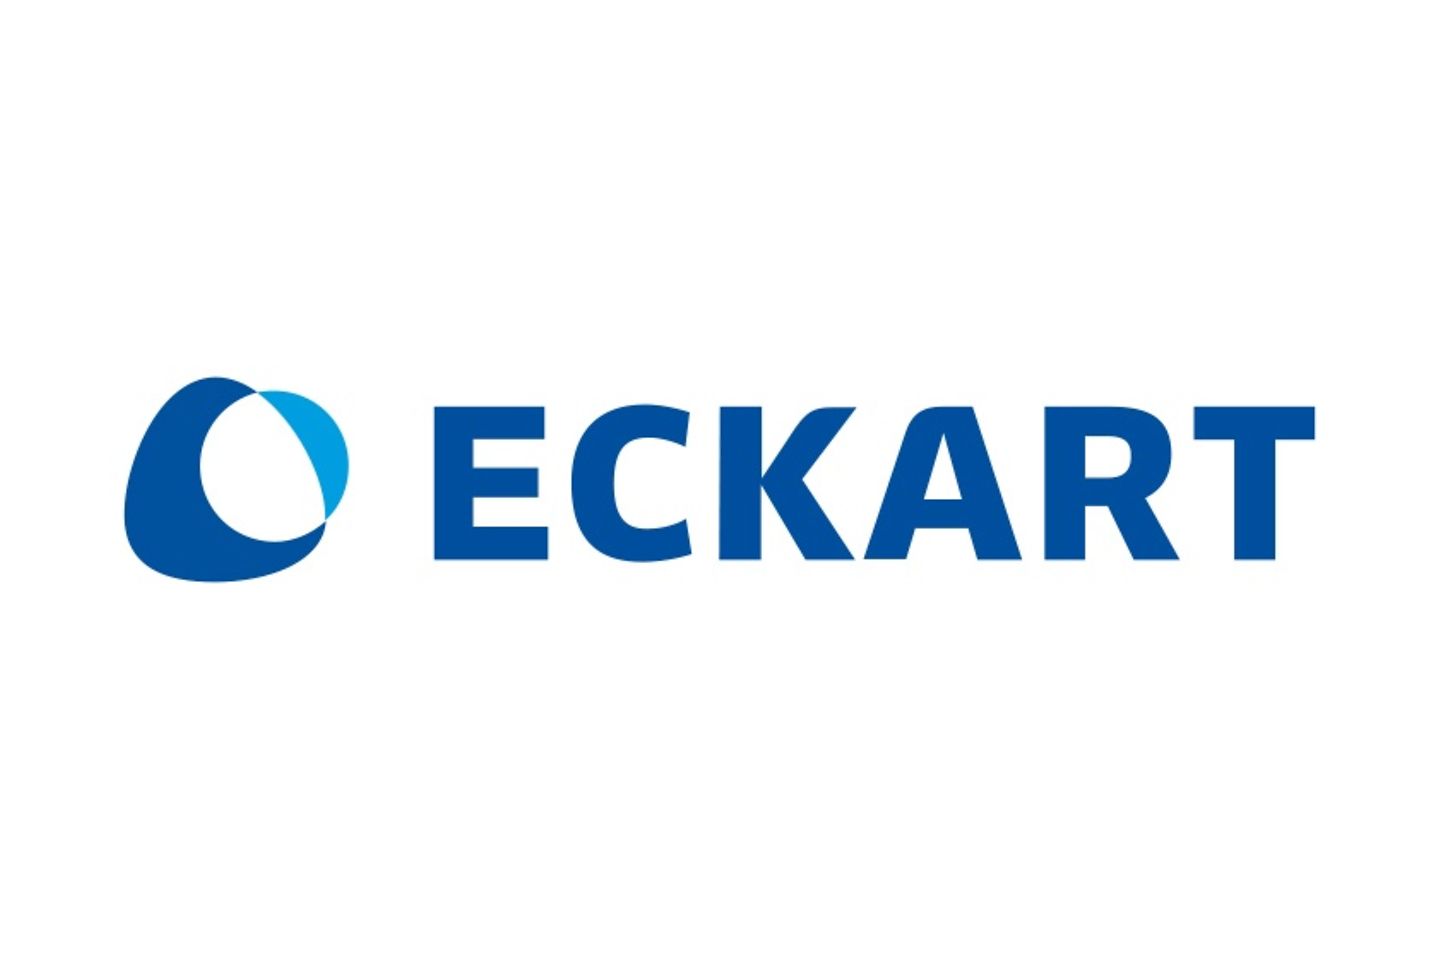 Eckart logo